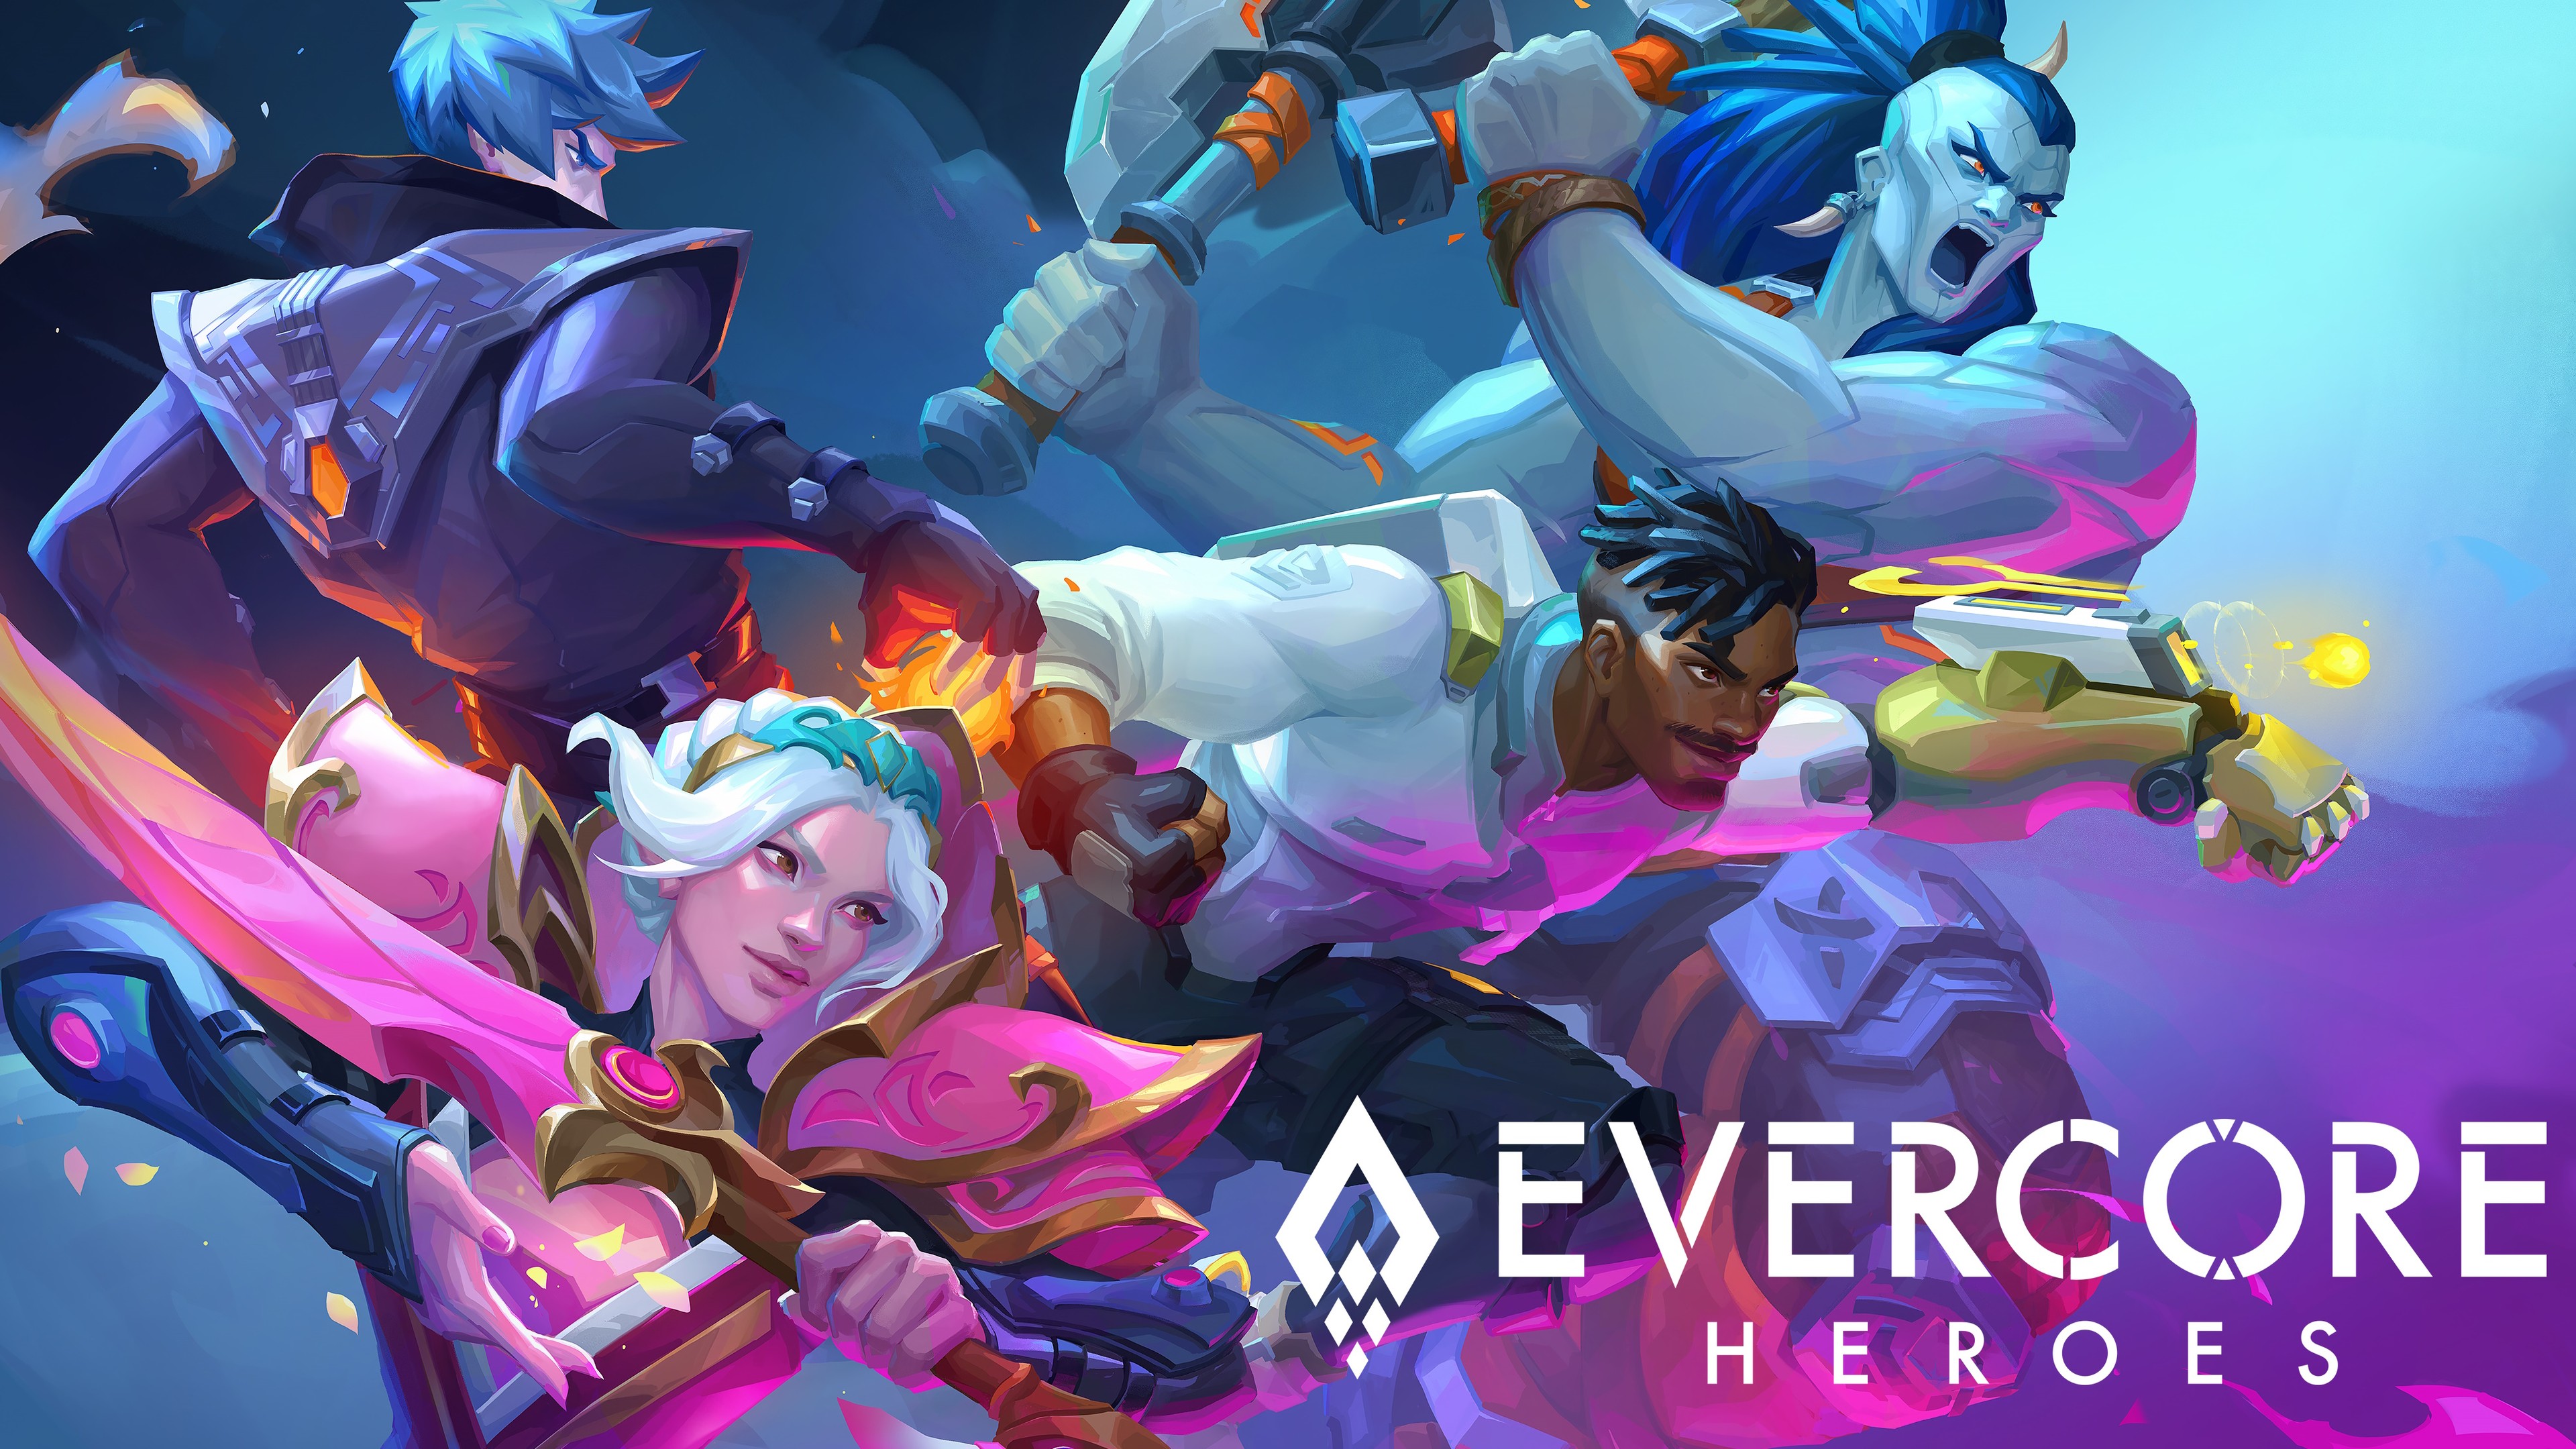 Niespodzianka, Evercore Heroes zaprzestaje dalszego rozwoju, ALE...